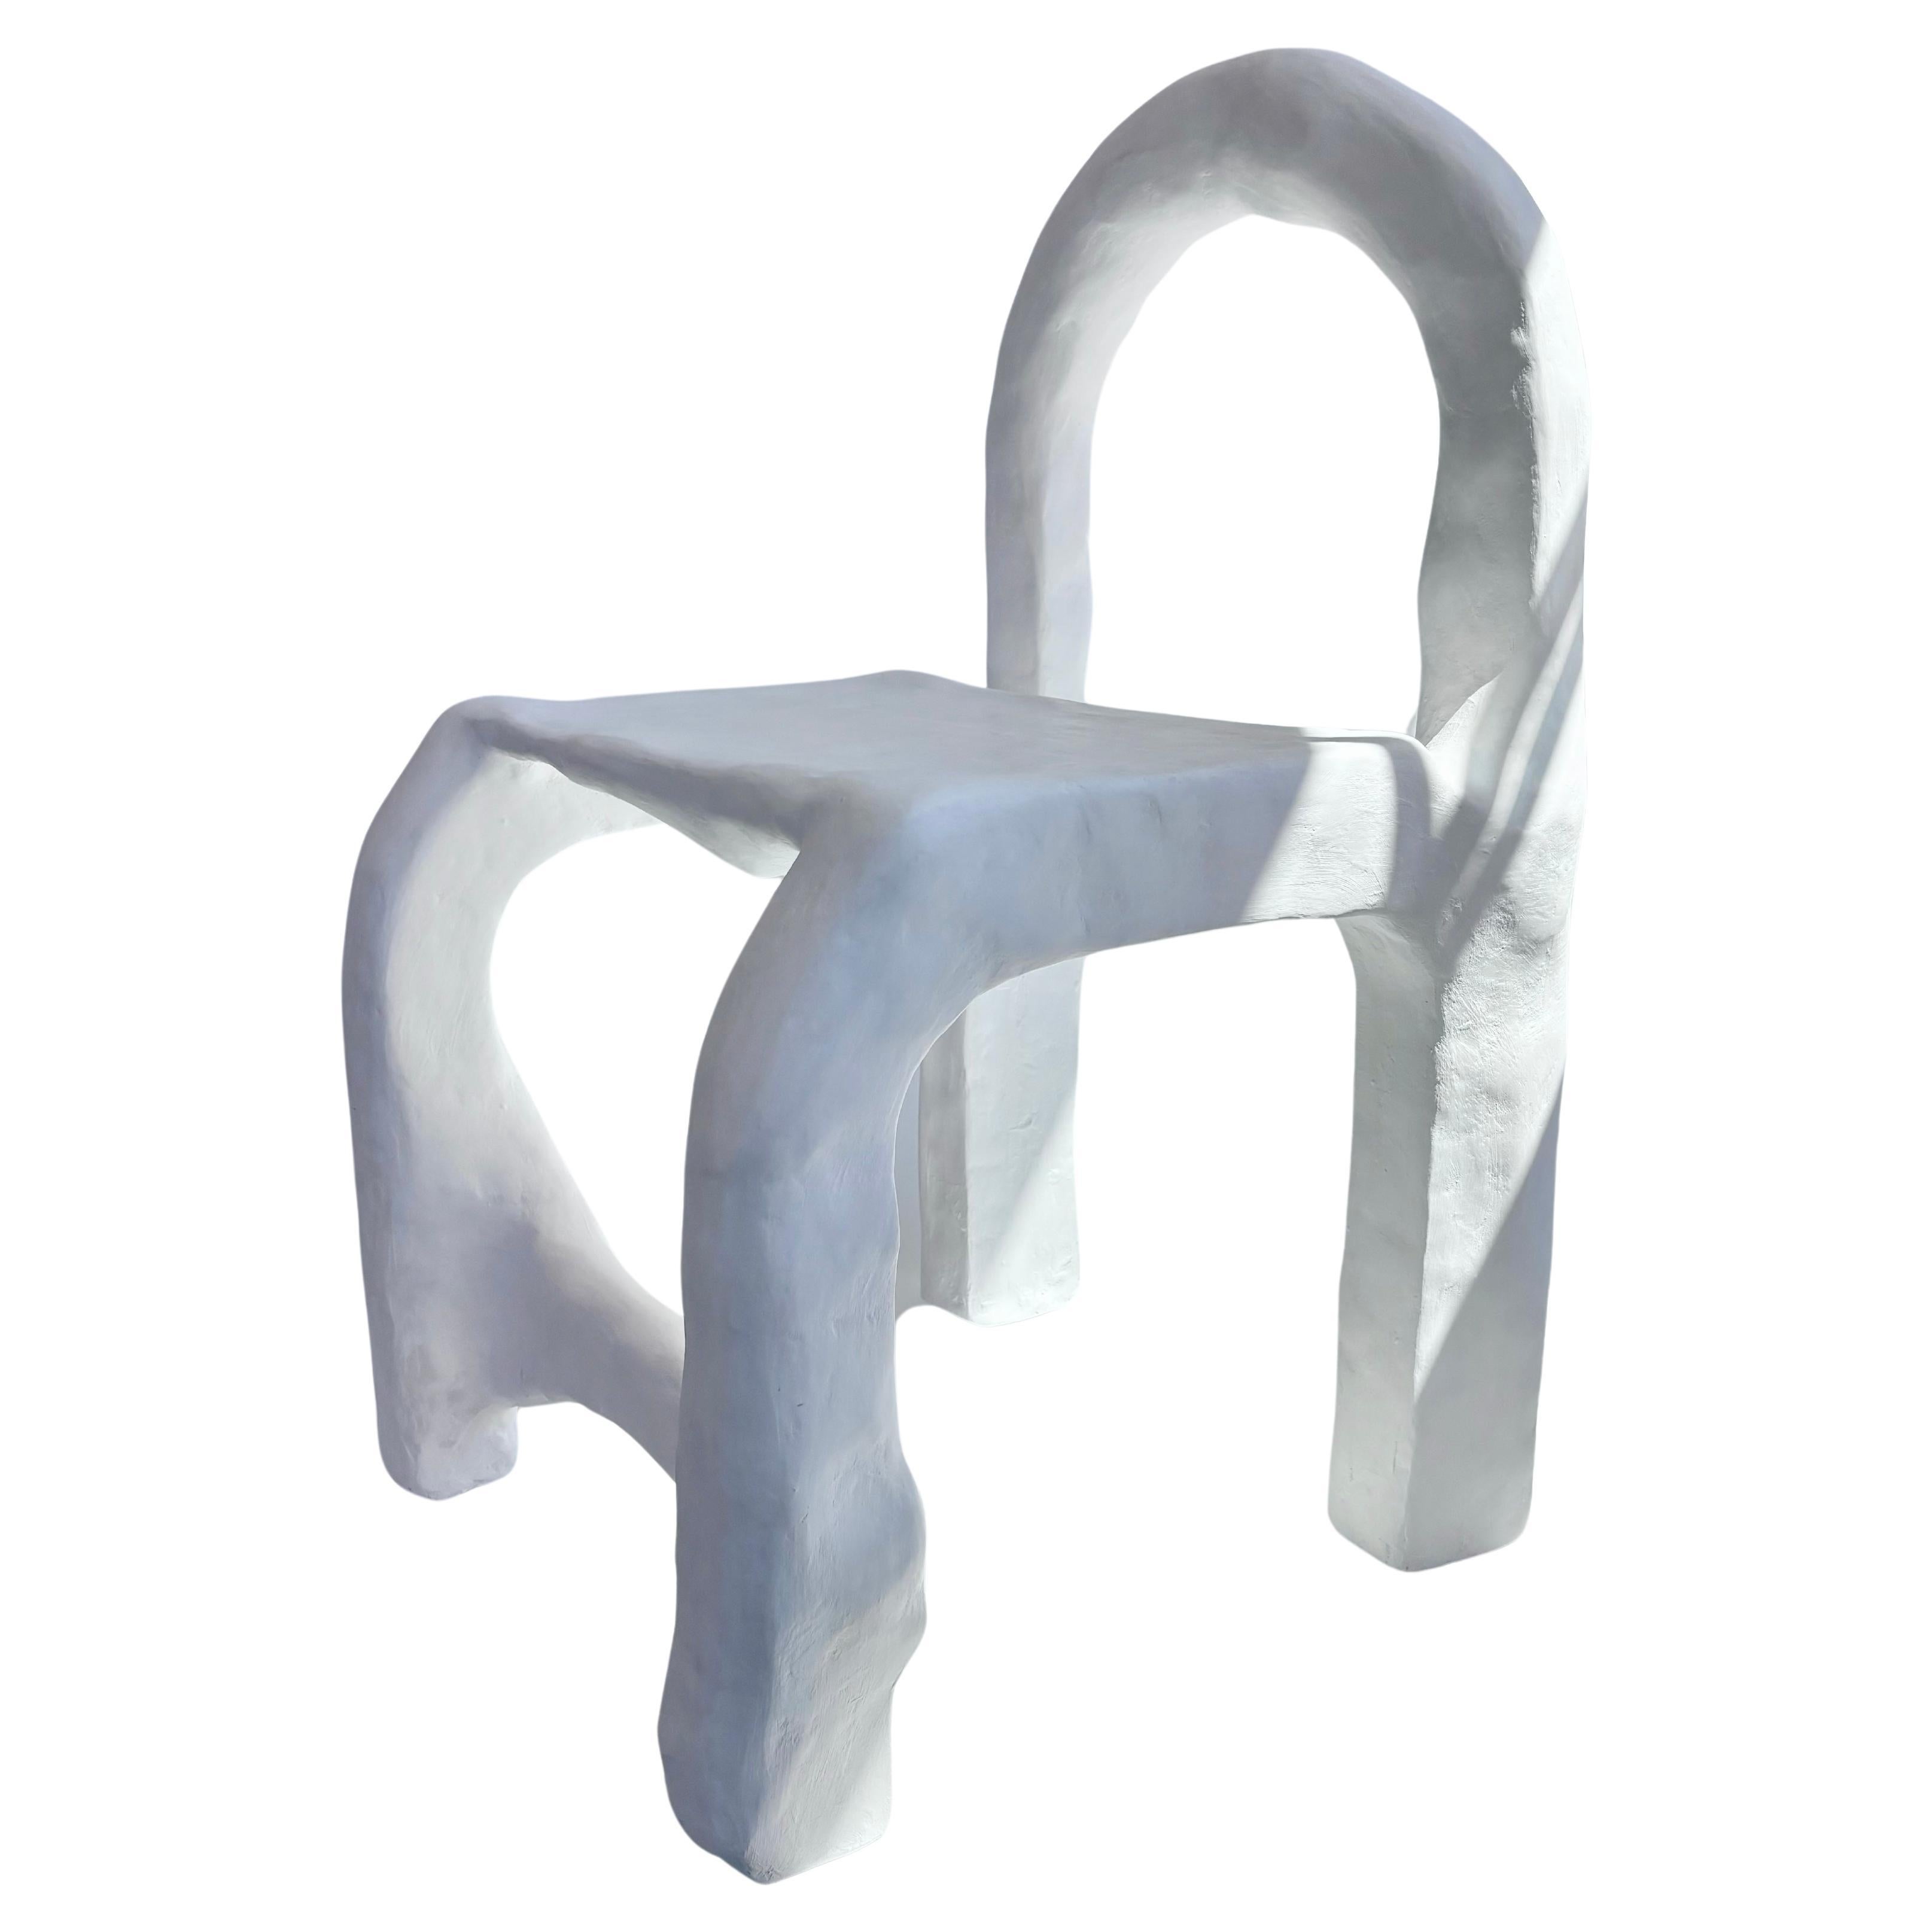 Biomorphic Line von Studio Chora, Amorpher weißer Stuhl, Limonen Gips, auf Lager